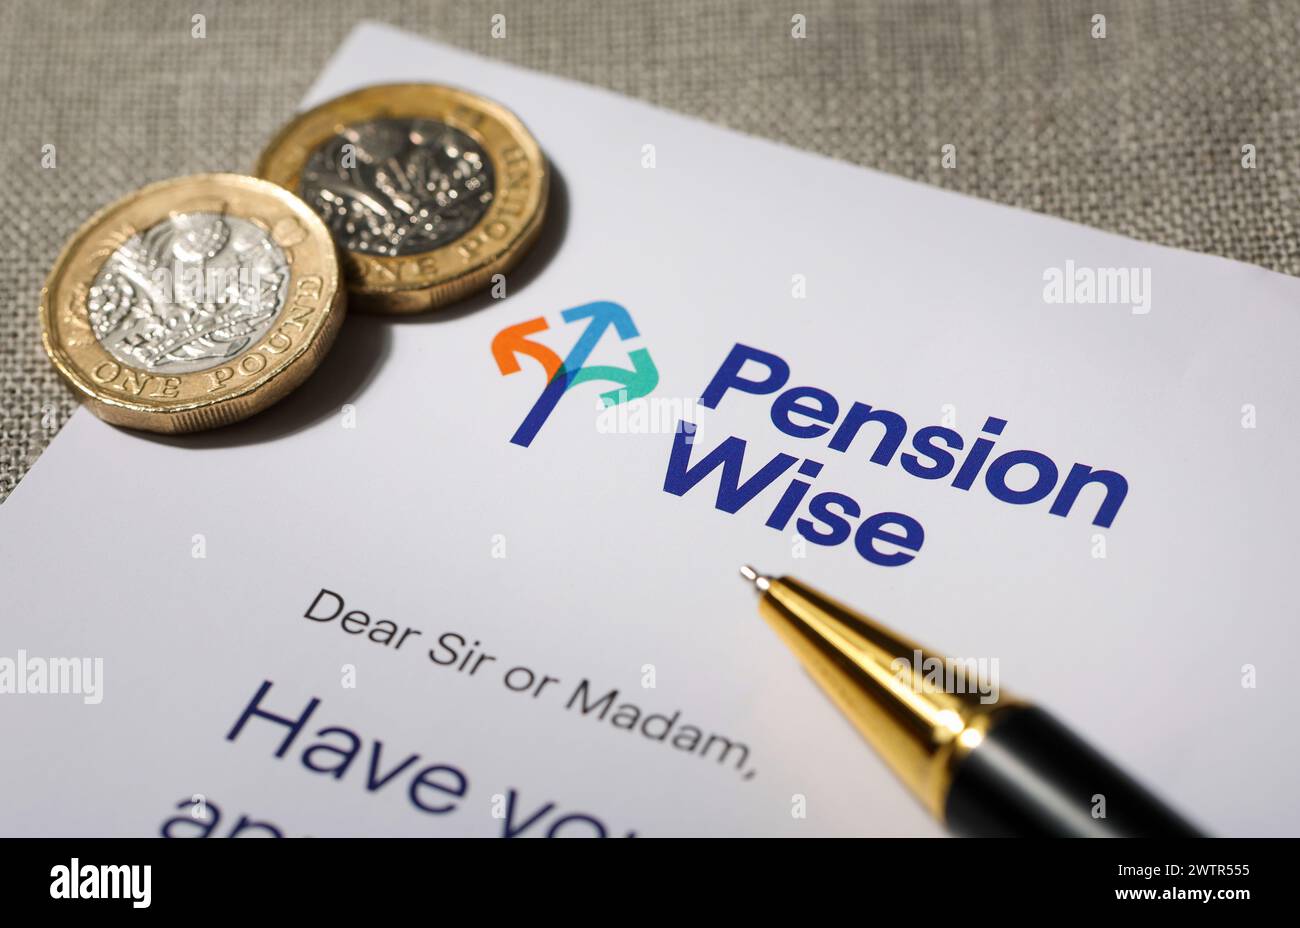 Lettera Pension Wise inviata a un residente nel Regno Unito per discutere del fabbisogno pensionistico. Foto Stock